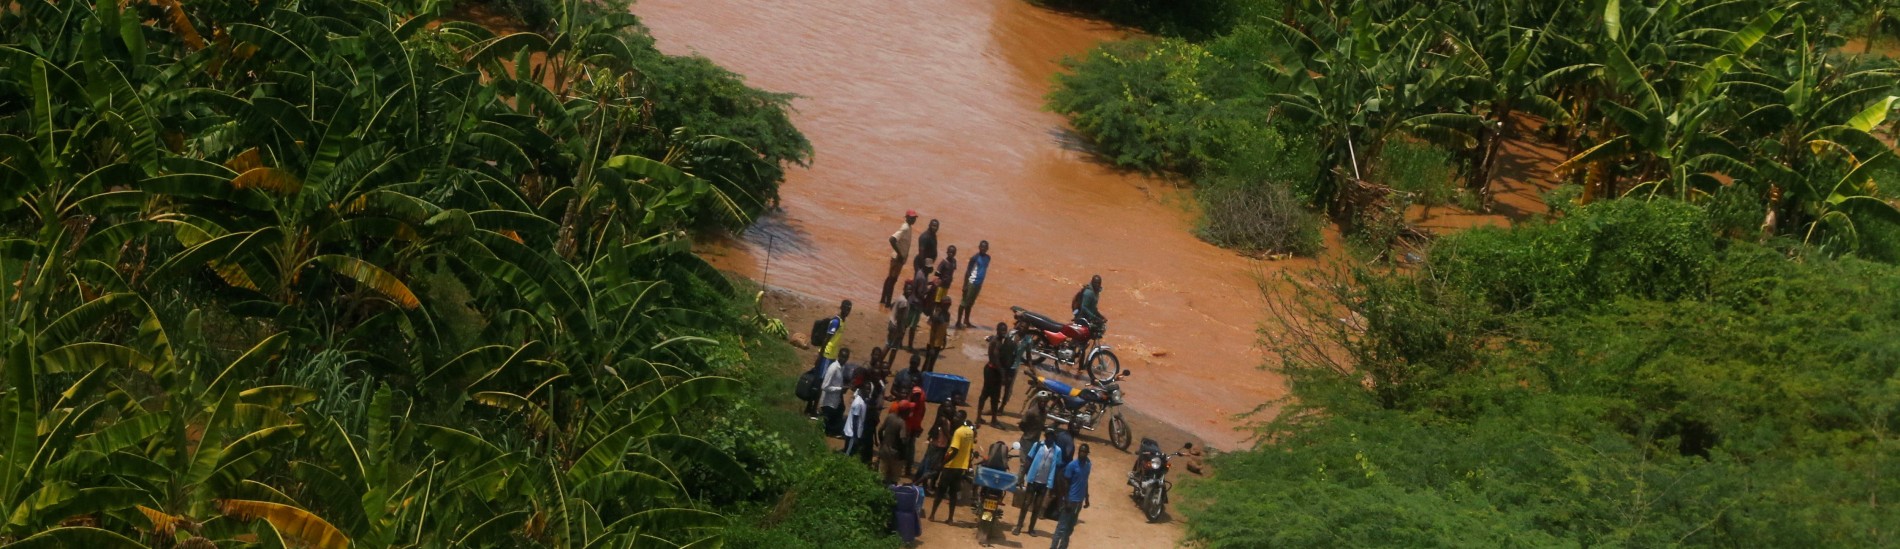 肯尼亚洪灾死亡人数上升至76人